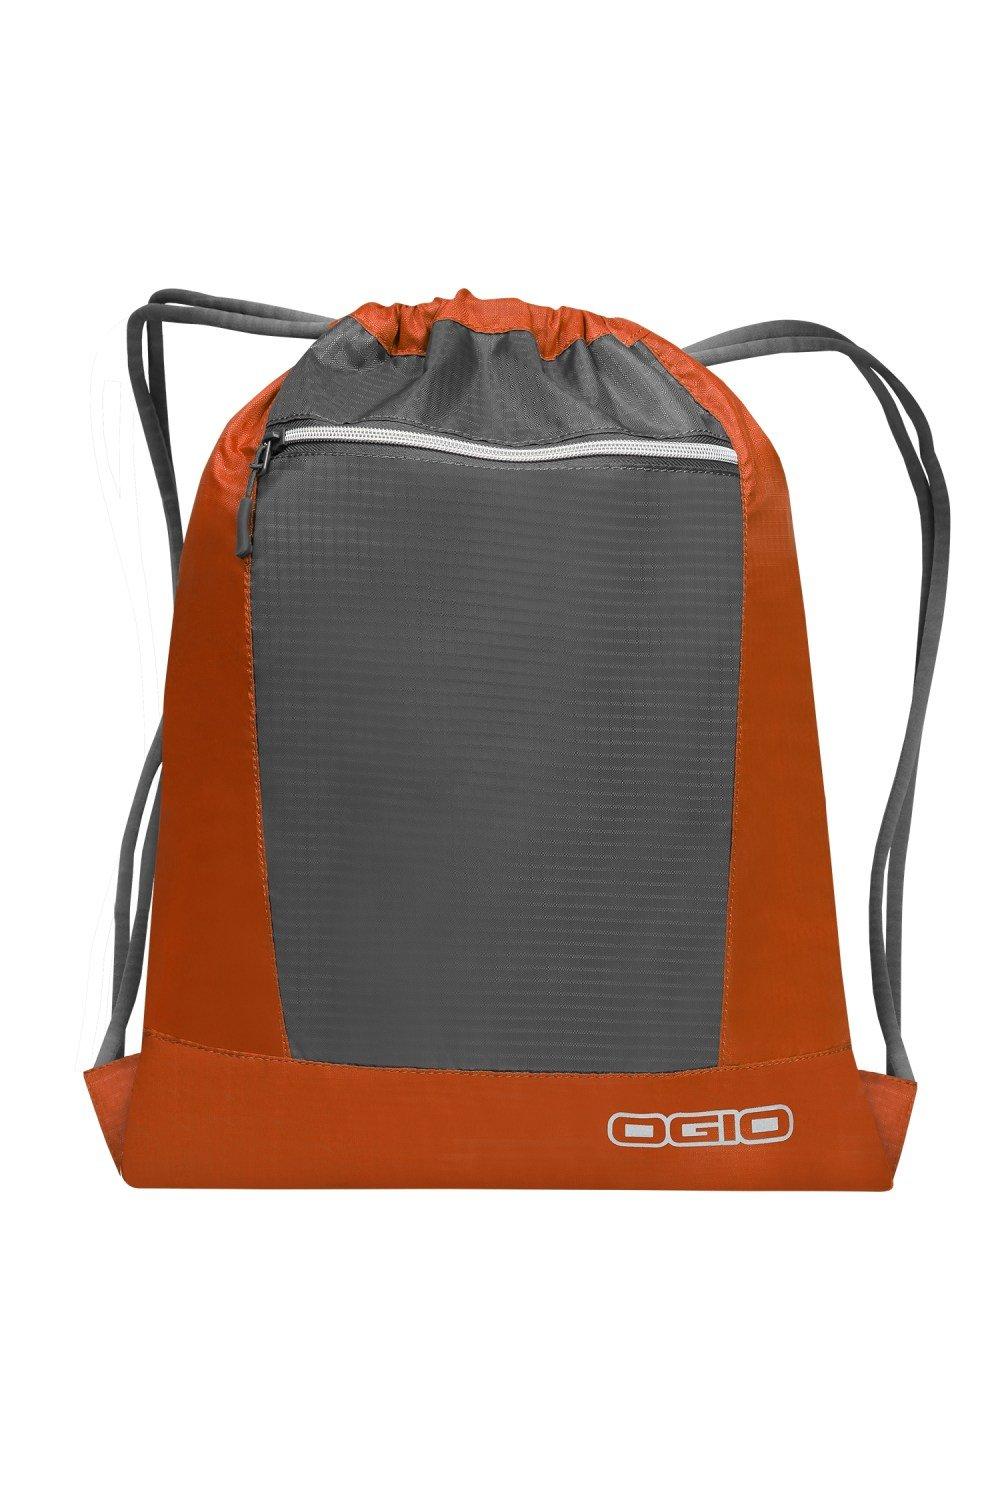 Сумка Endurance Pulse на шнурке Ogio, оранжевый сумка endurance pulse на шнурке ogio синий